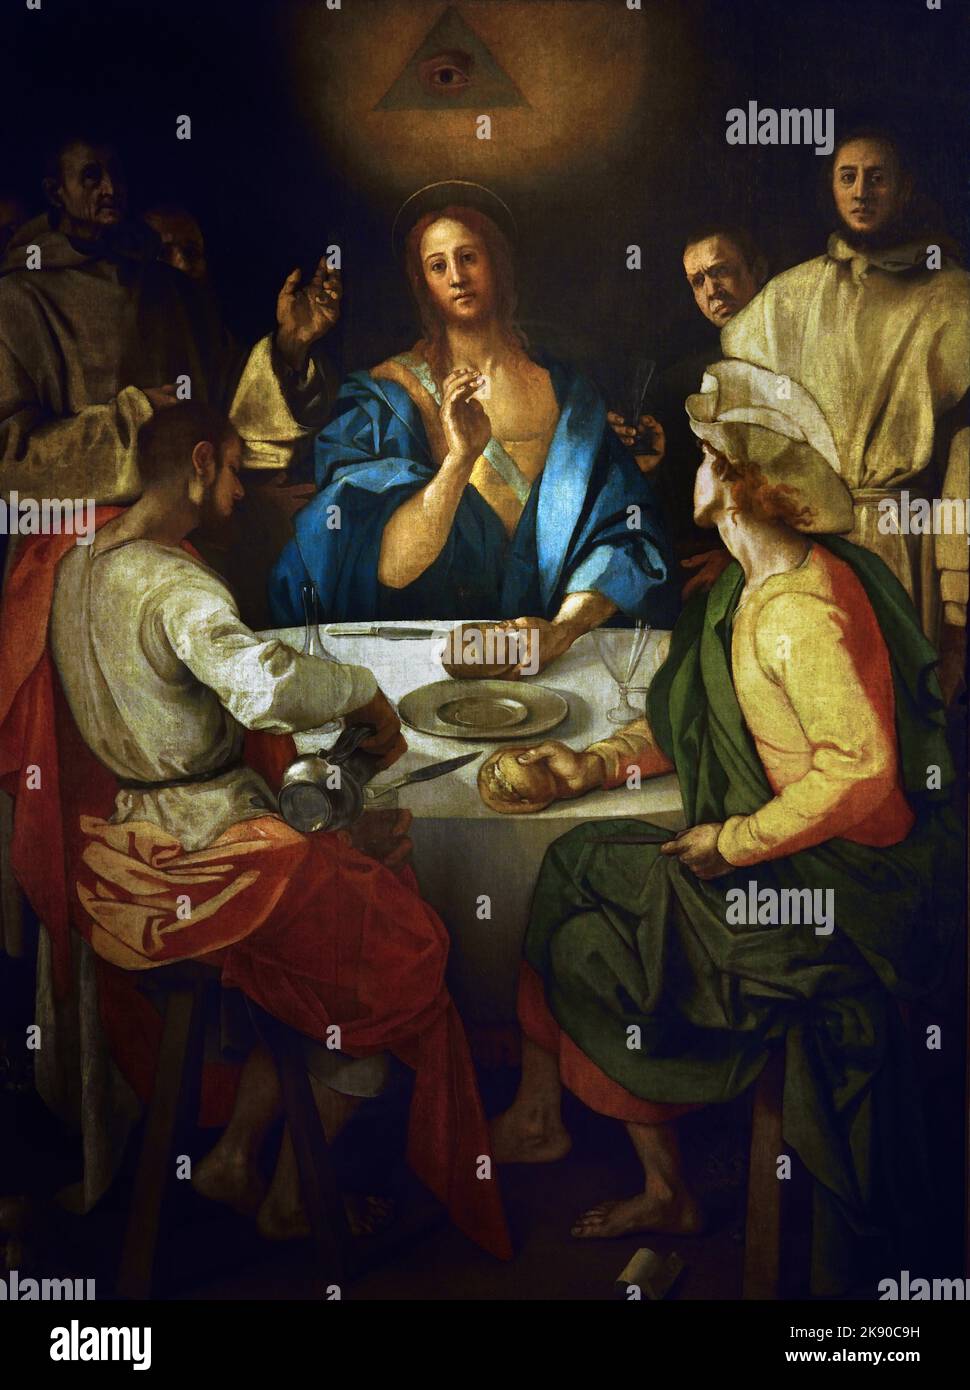 Cena a Emmaus Jacopo Carucci, detto Pontormo (Pontorme, Empoli, 1494 – Firenze, 1552) , Firenze, Italia. ( Il dipinto si ispira all’incisione dello stesso soggetto nella serie Small Passion di Dürer ). Foto Stock